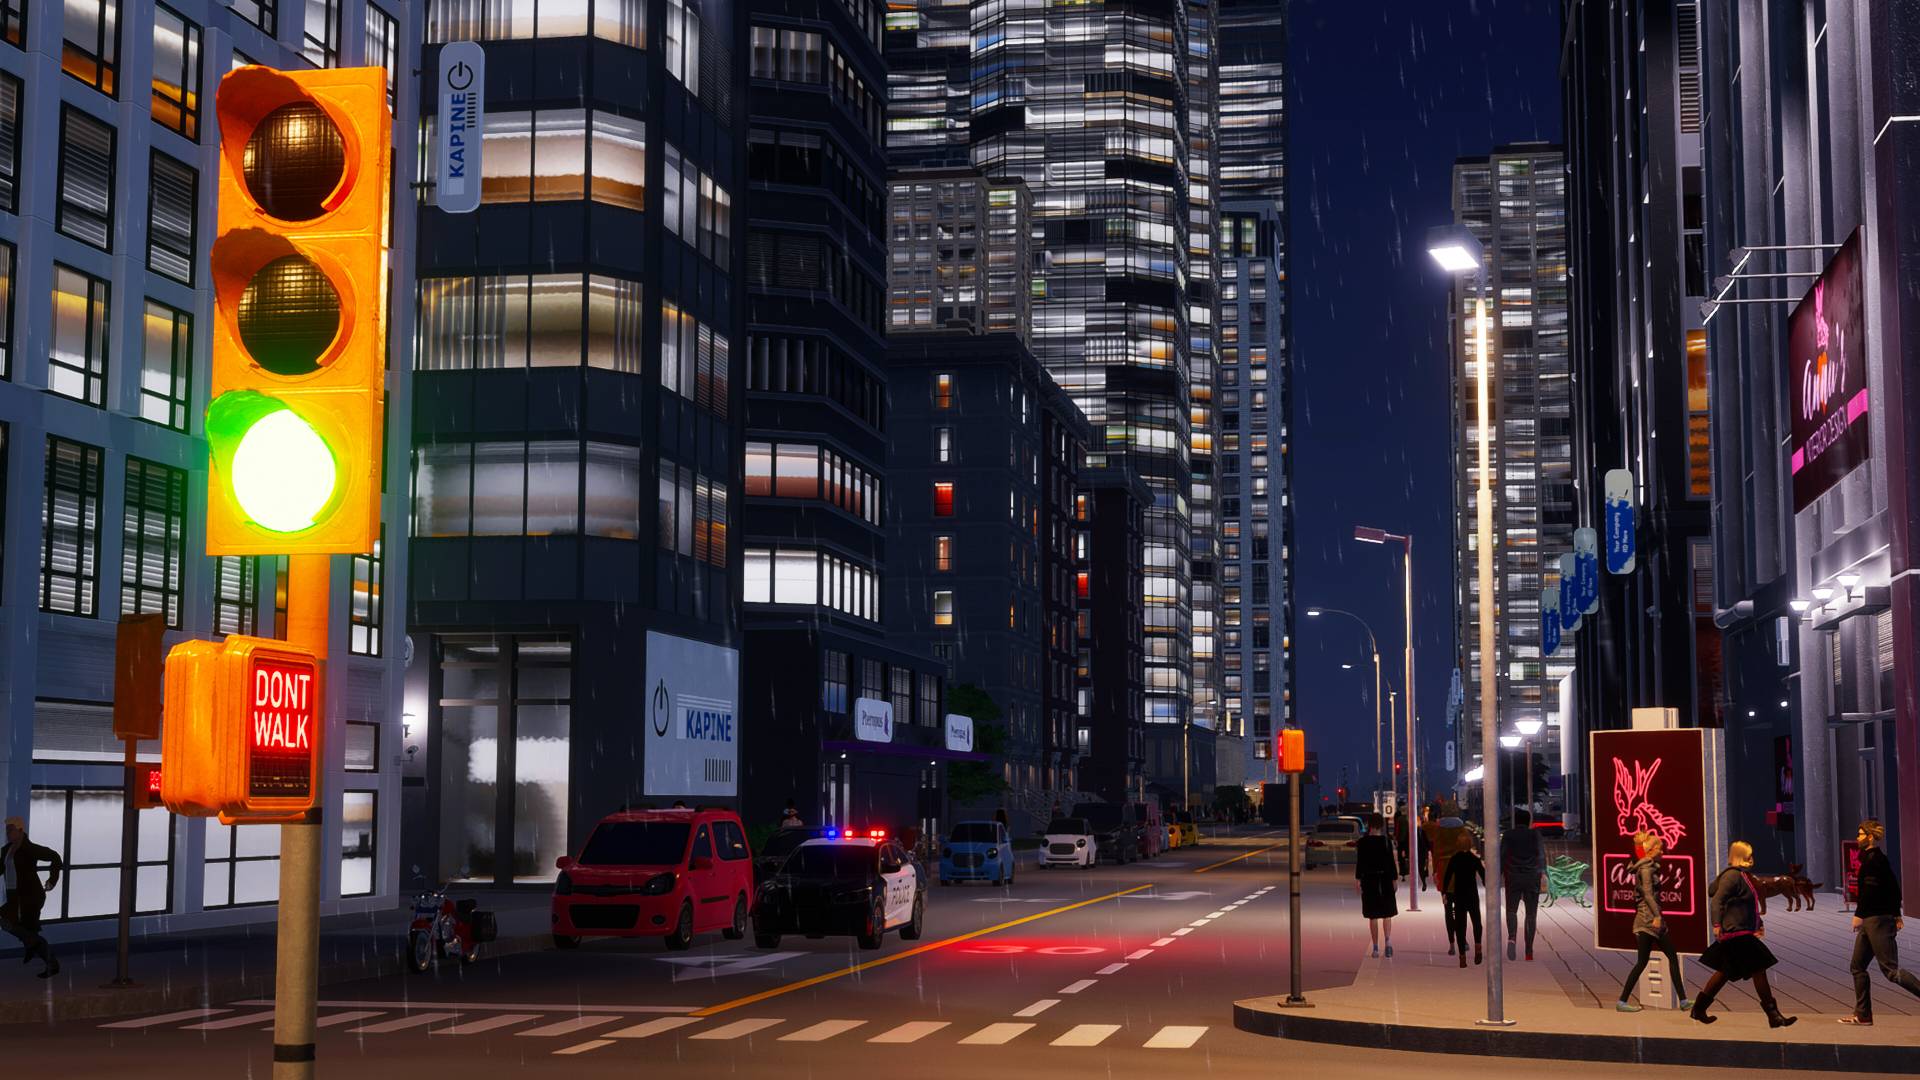 Первое DLC для Cities: Skylines 2 вышло из строя так сильно, что теперь оно бесплатное, а разработчики градостроителей отложили выход следующего дополнения, чтобы сосредоточиться на исправлении всего остального.